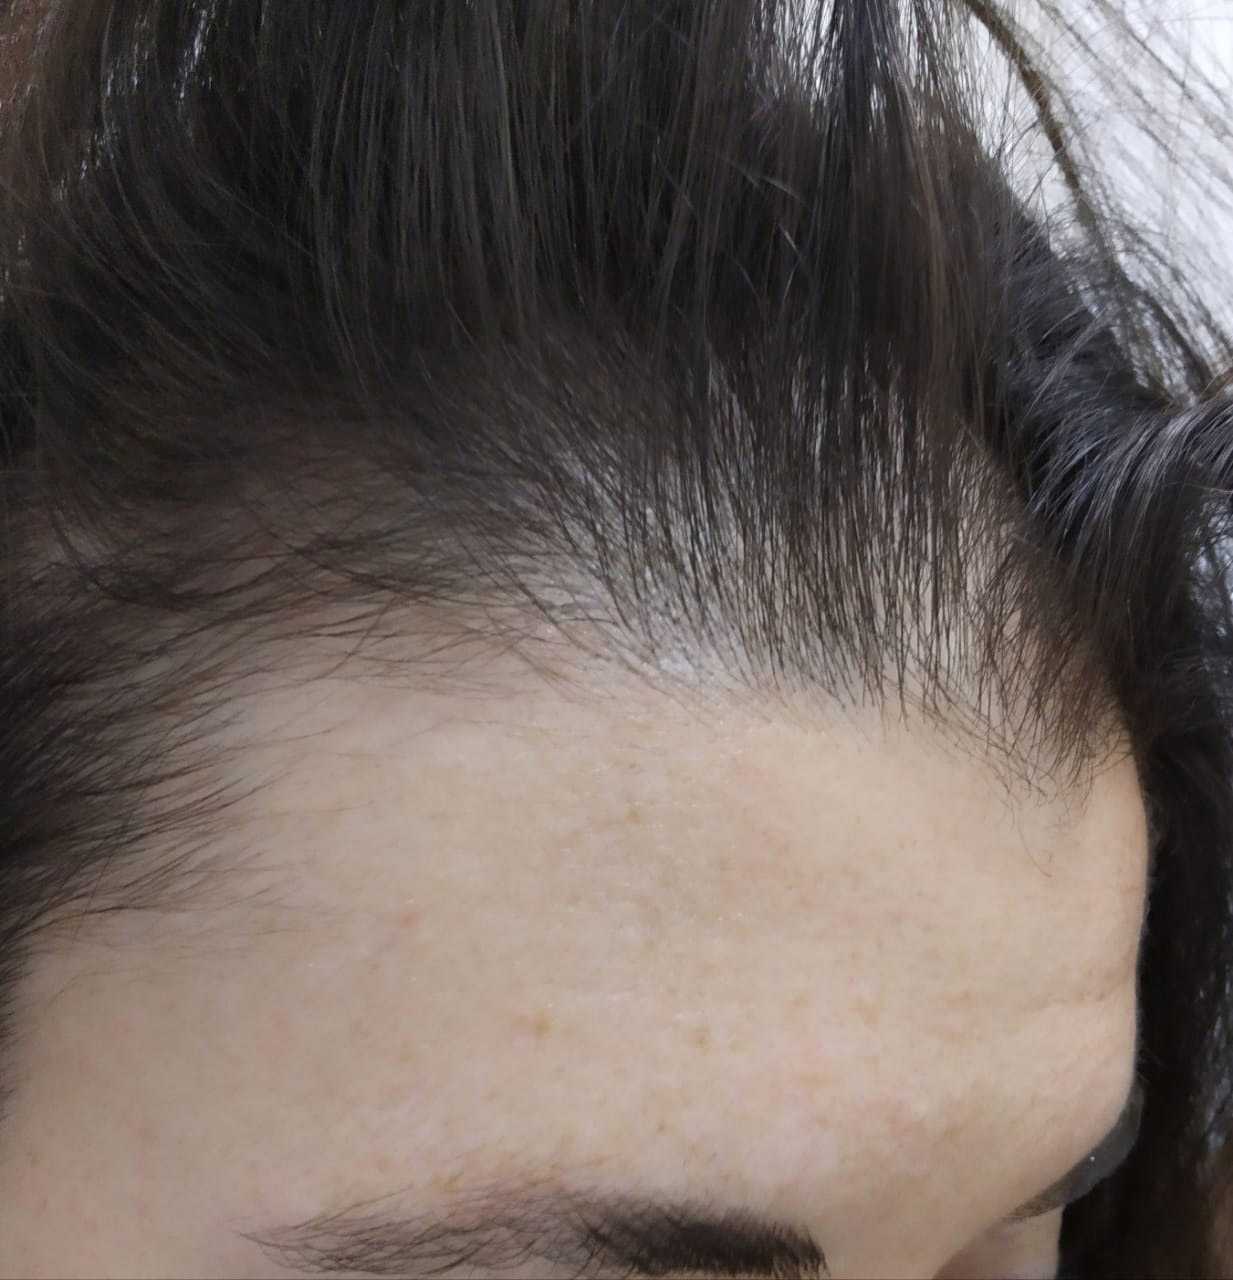 Причины очагового выпадения волос у мужчин и женщин, методы лечения заболевания